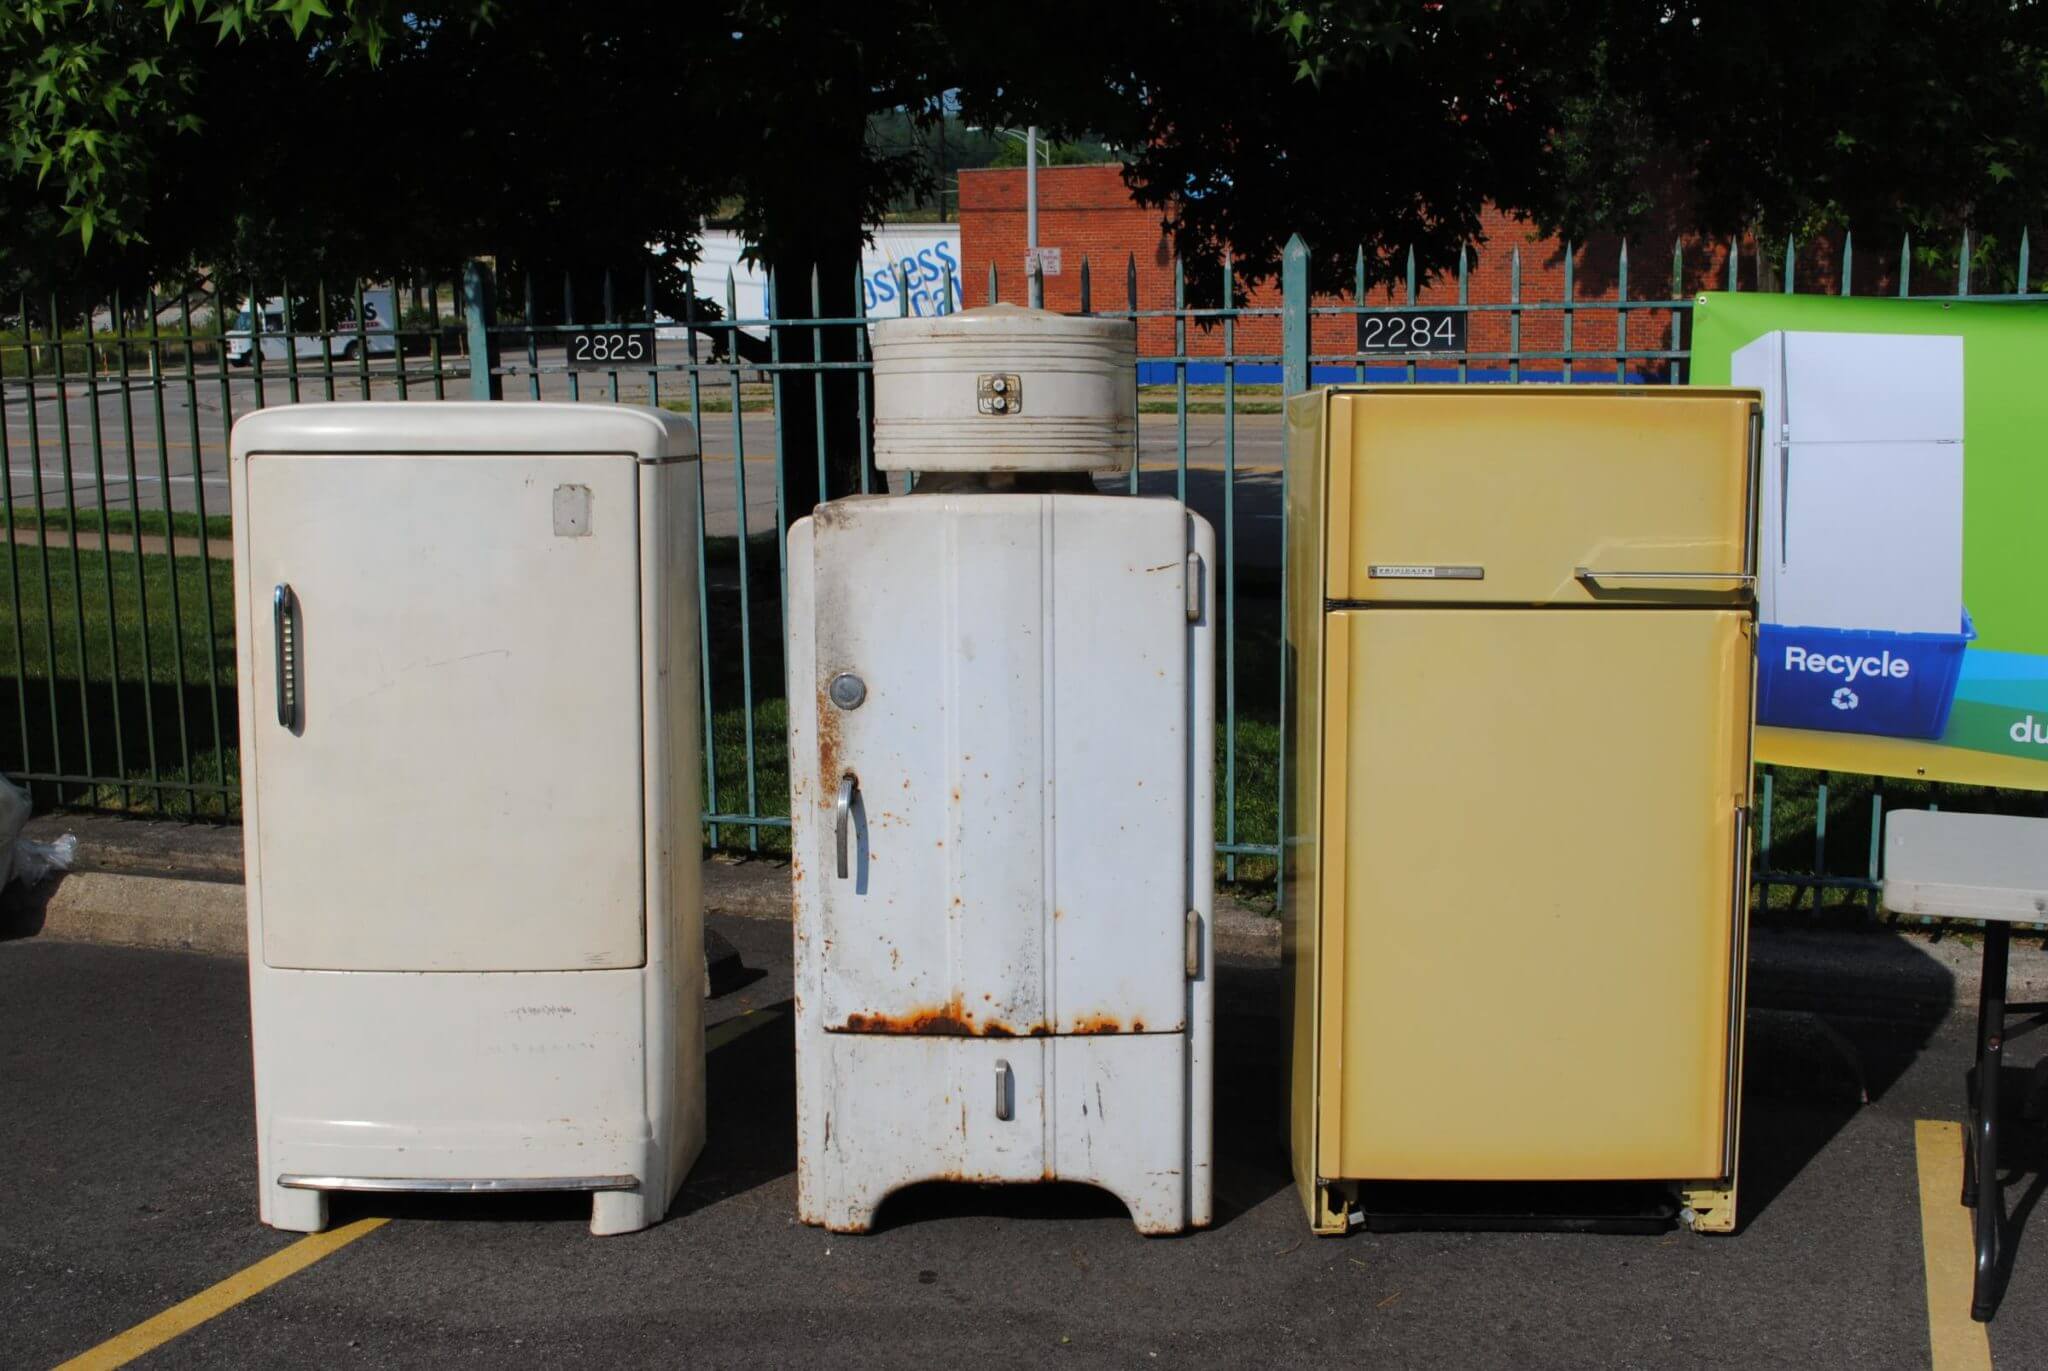 Утилизация холодильника — как сдать и куда можно вывезти